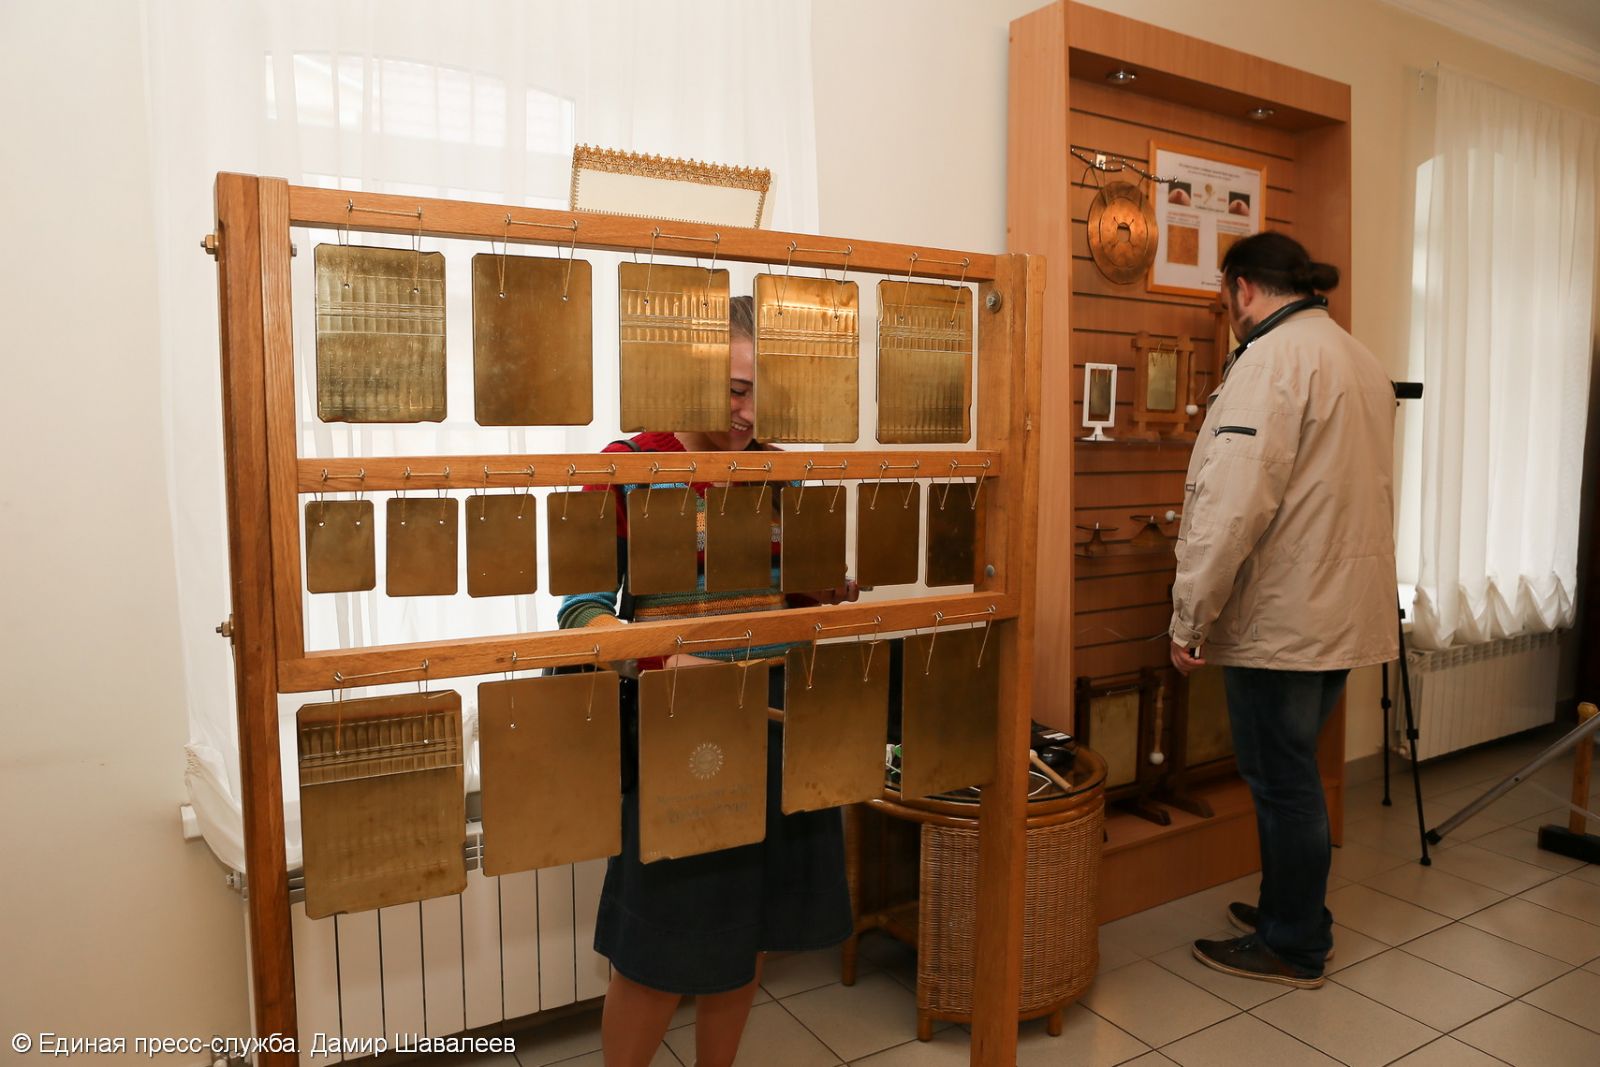 В Сергиевом Посаде открылась уникальная экспозиция «Колокола Руси»